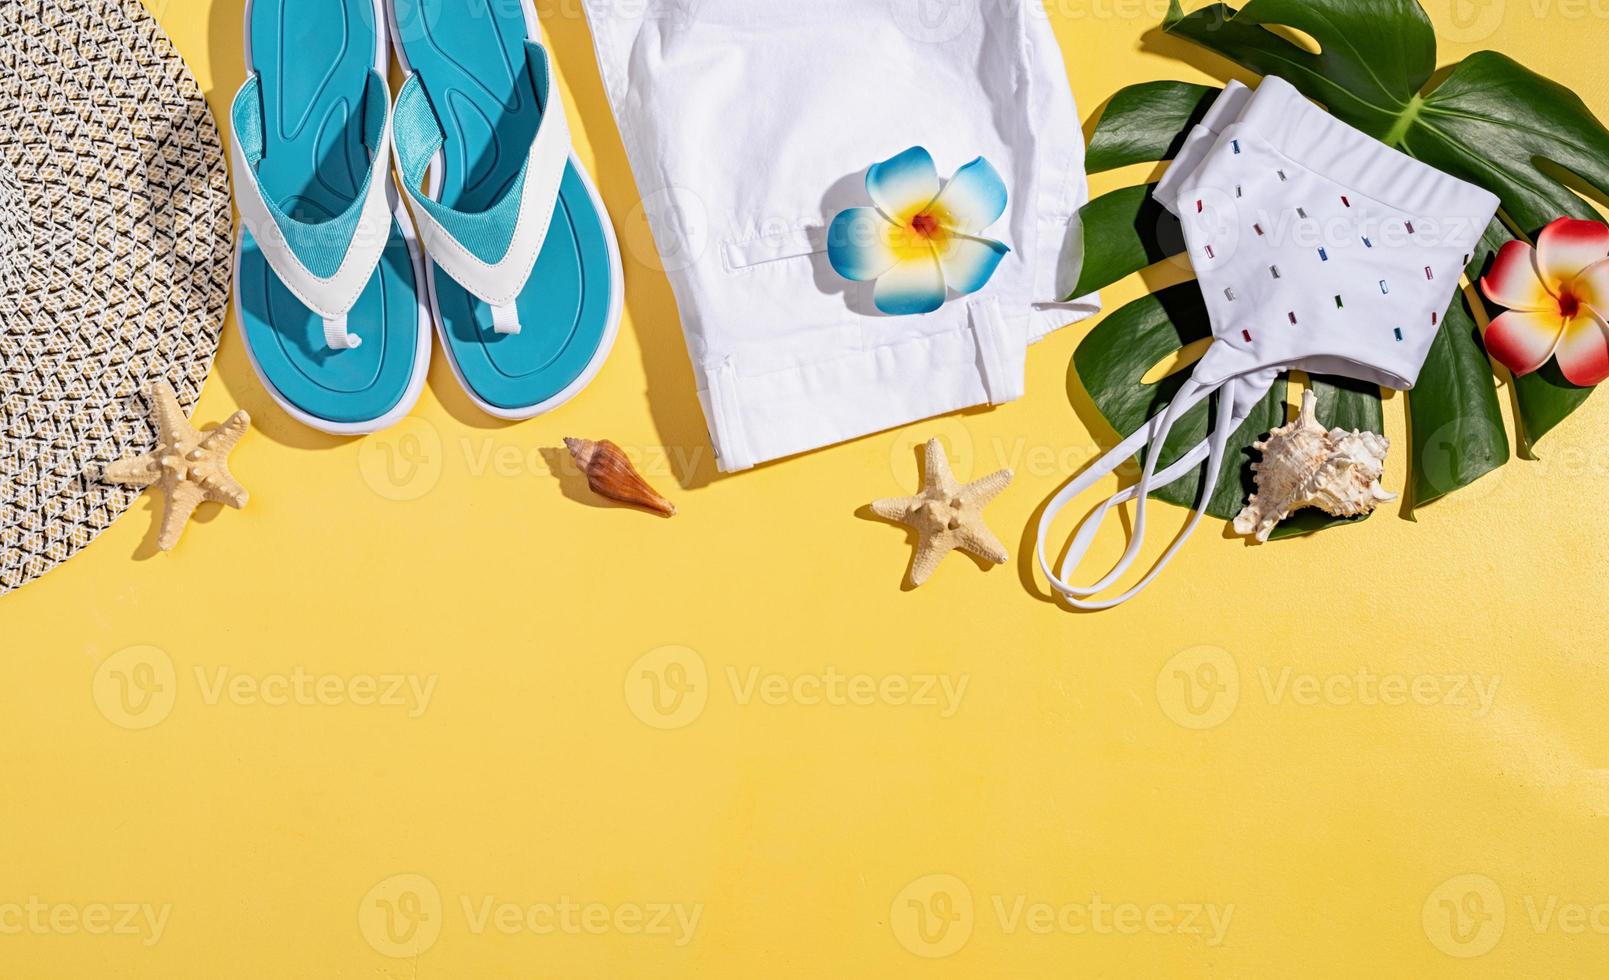 zomeraccessoires met kleding, schoenen, tropische bladeren en bloemen foto